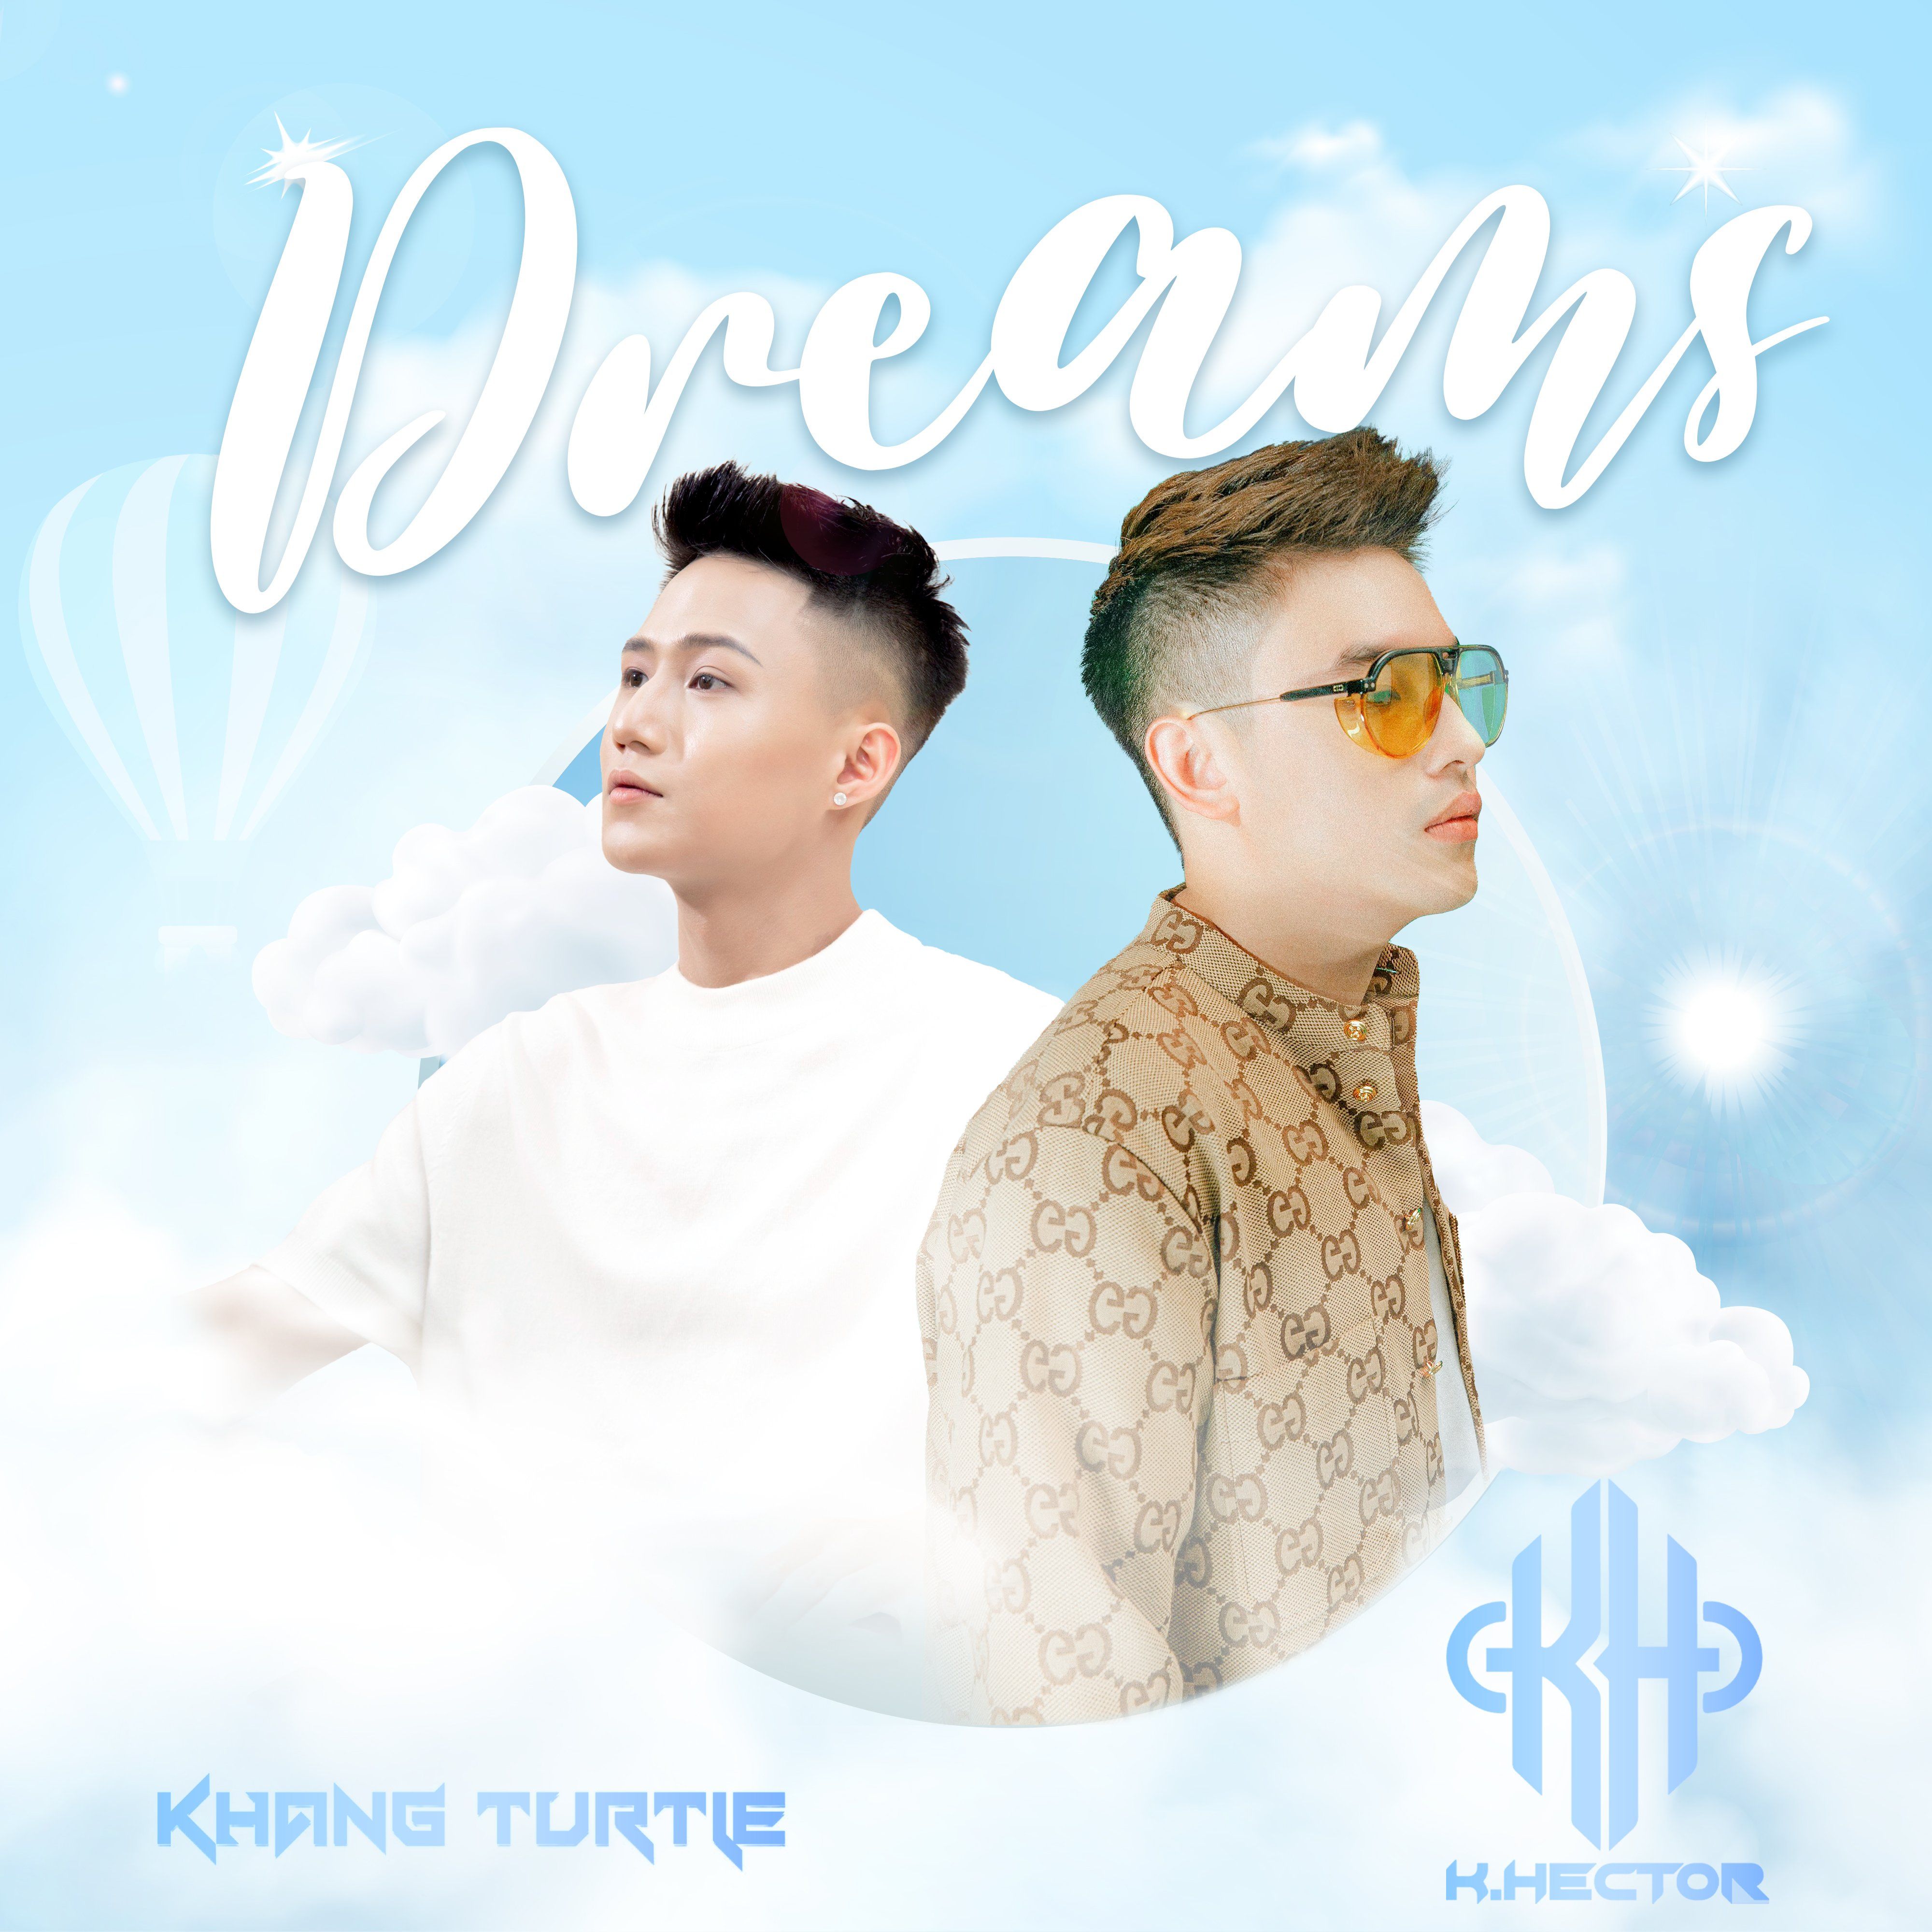 Download Dreams - KhangTurtle x K.Hector